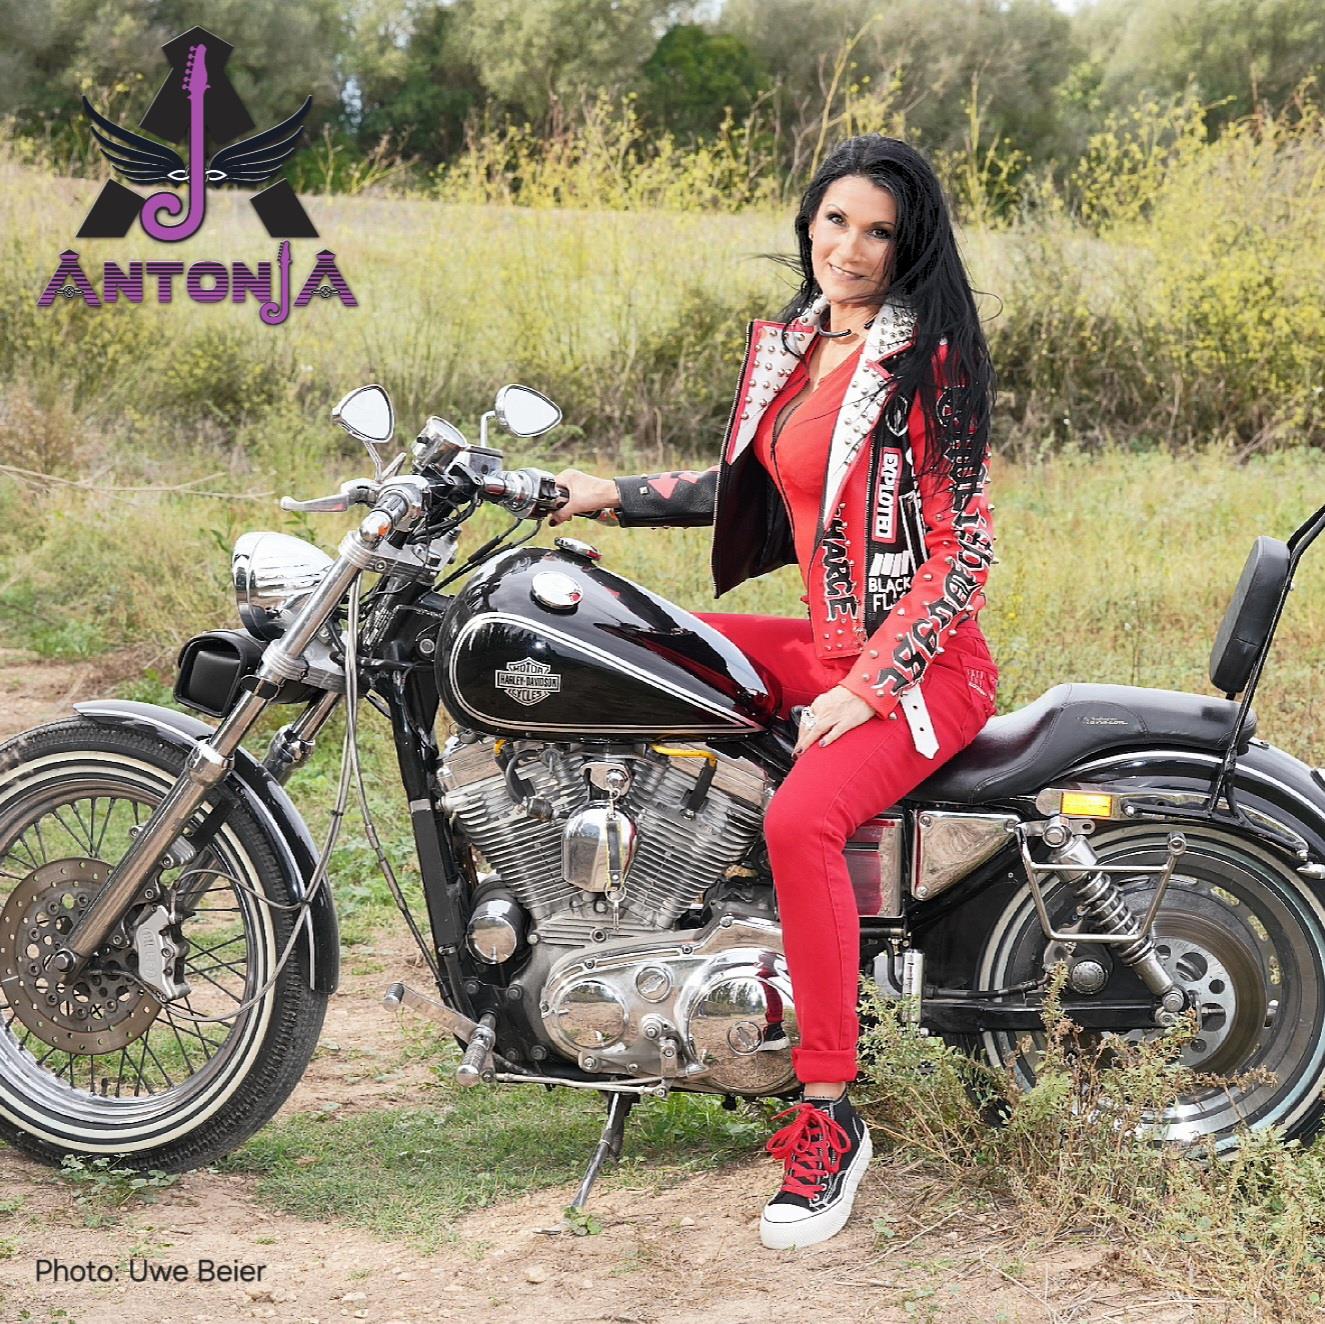 Antonja with her Harley Davidson